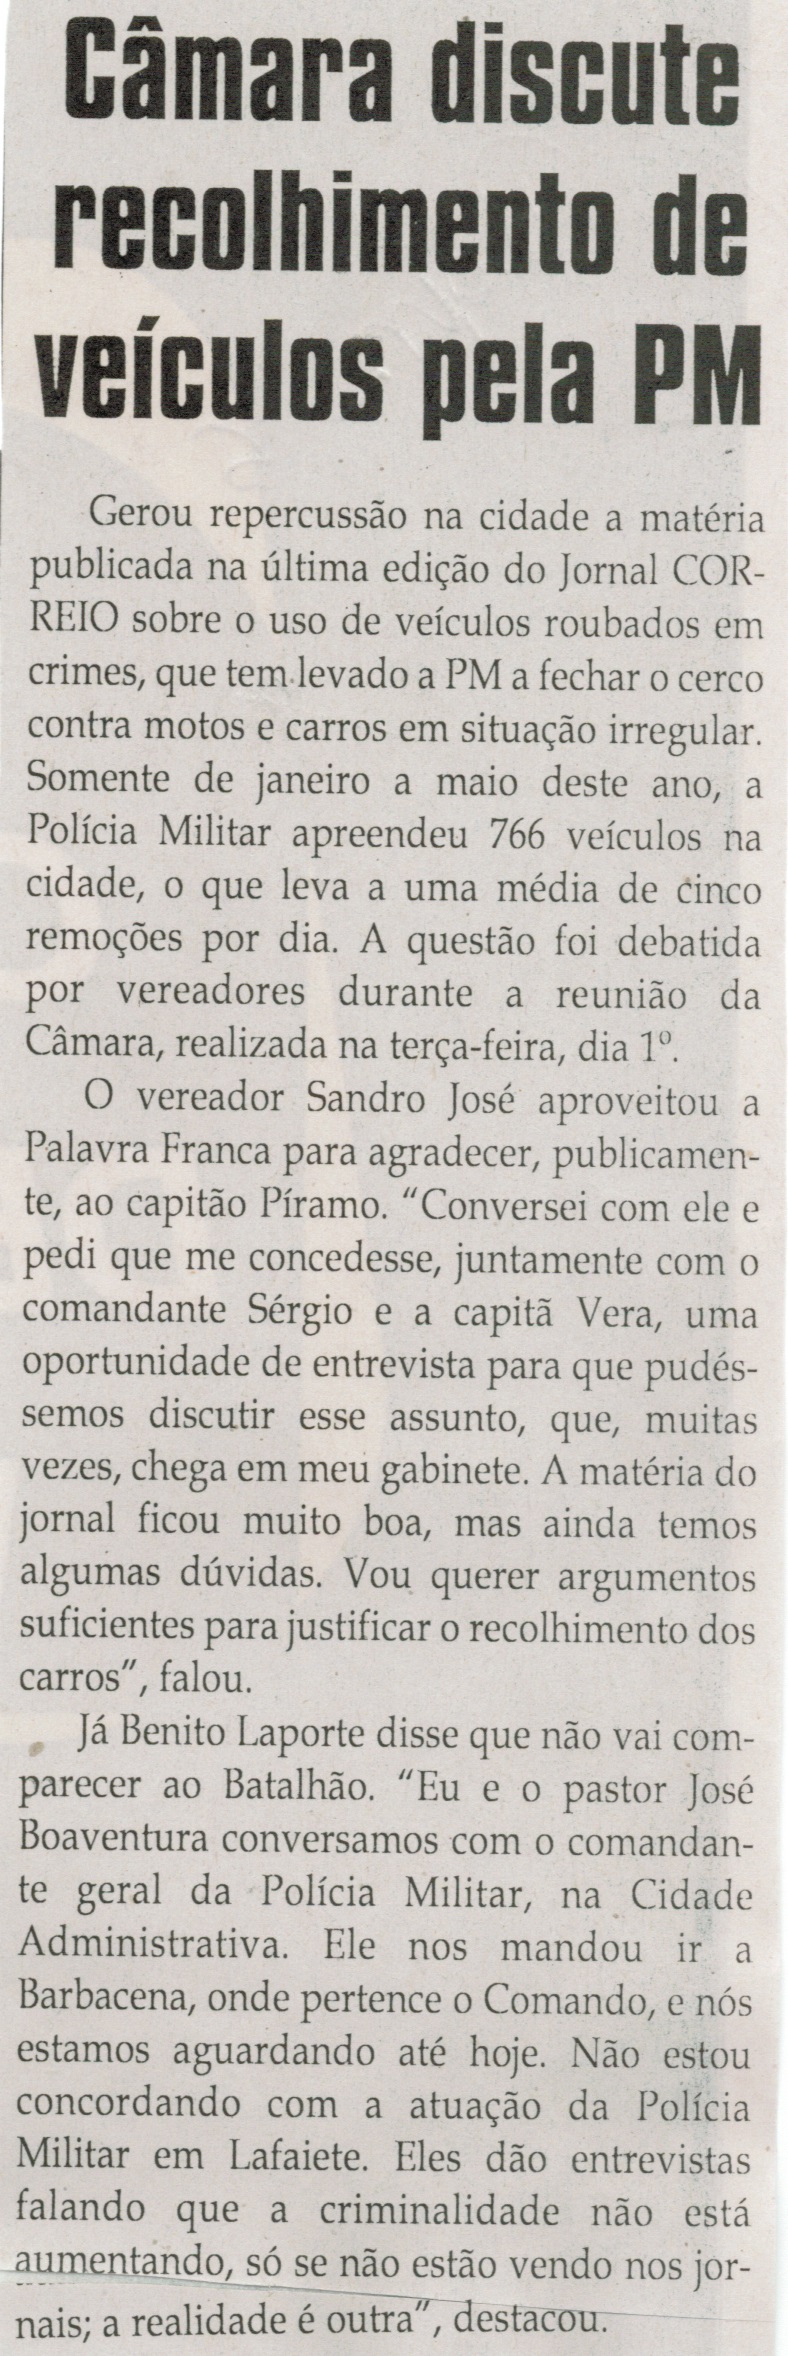  Câmara discute recolhimento de veículos pela PM. Jornal Correio da Cidade, Conselheiro Lafaiete, 05 jul. 2014, p. 6.